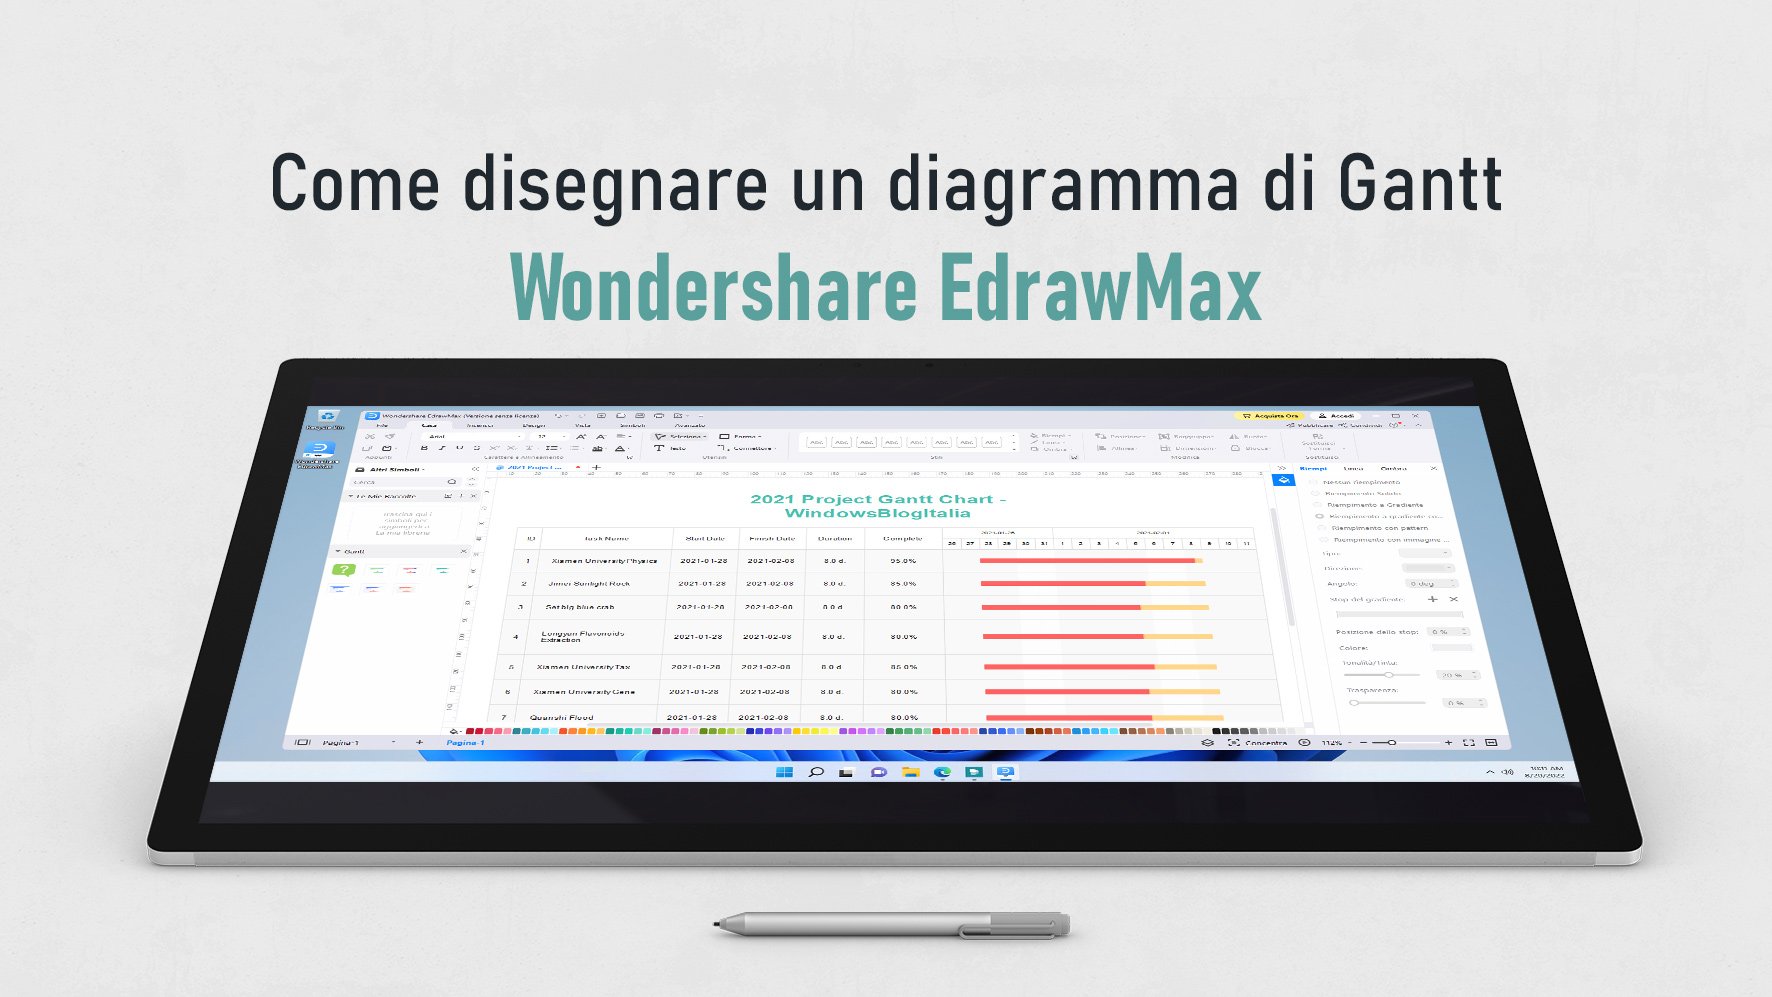 Wondershare EdrawMax - Come disegnare un diagramma di Gantt